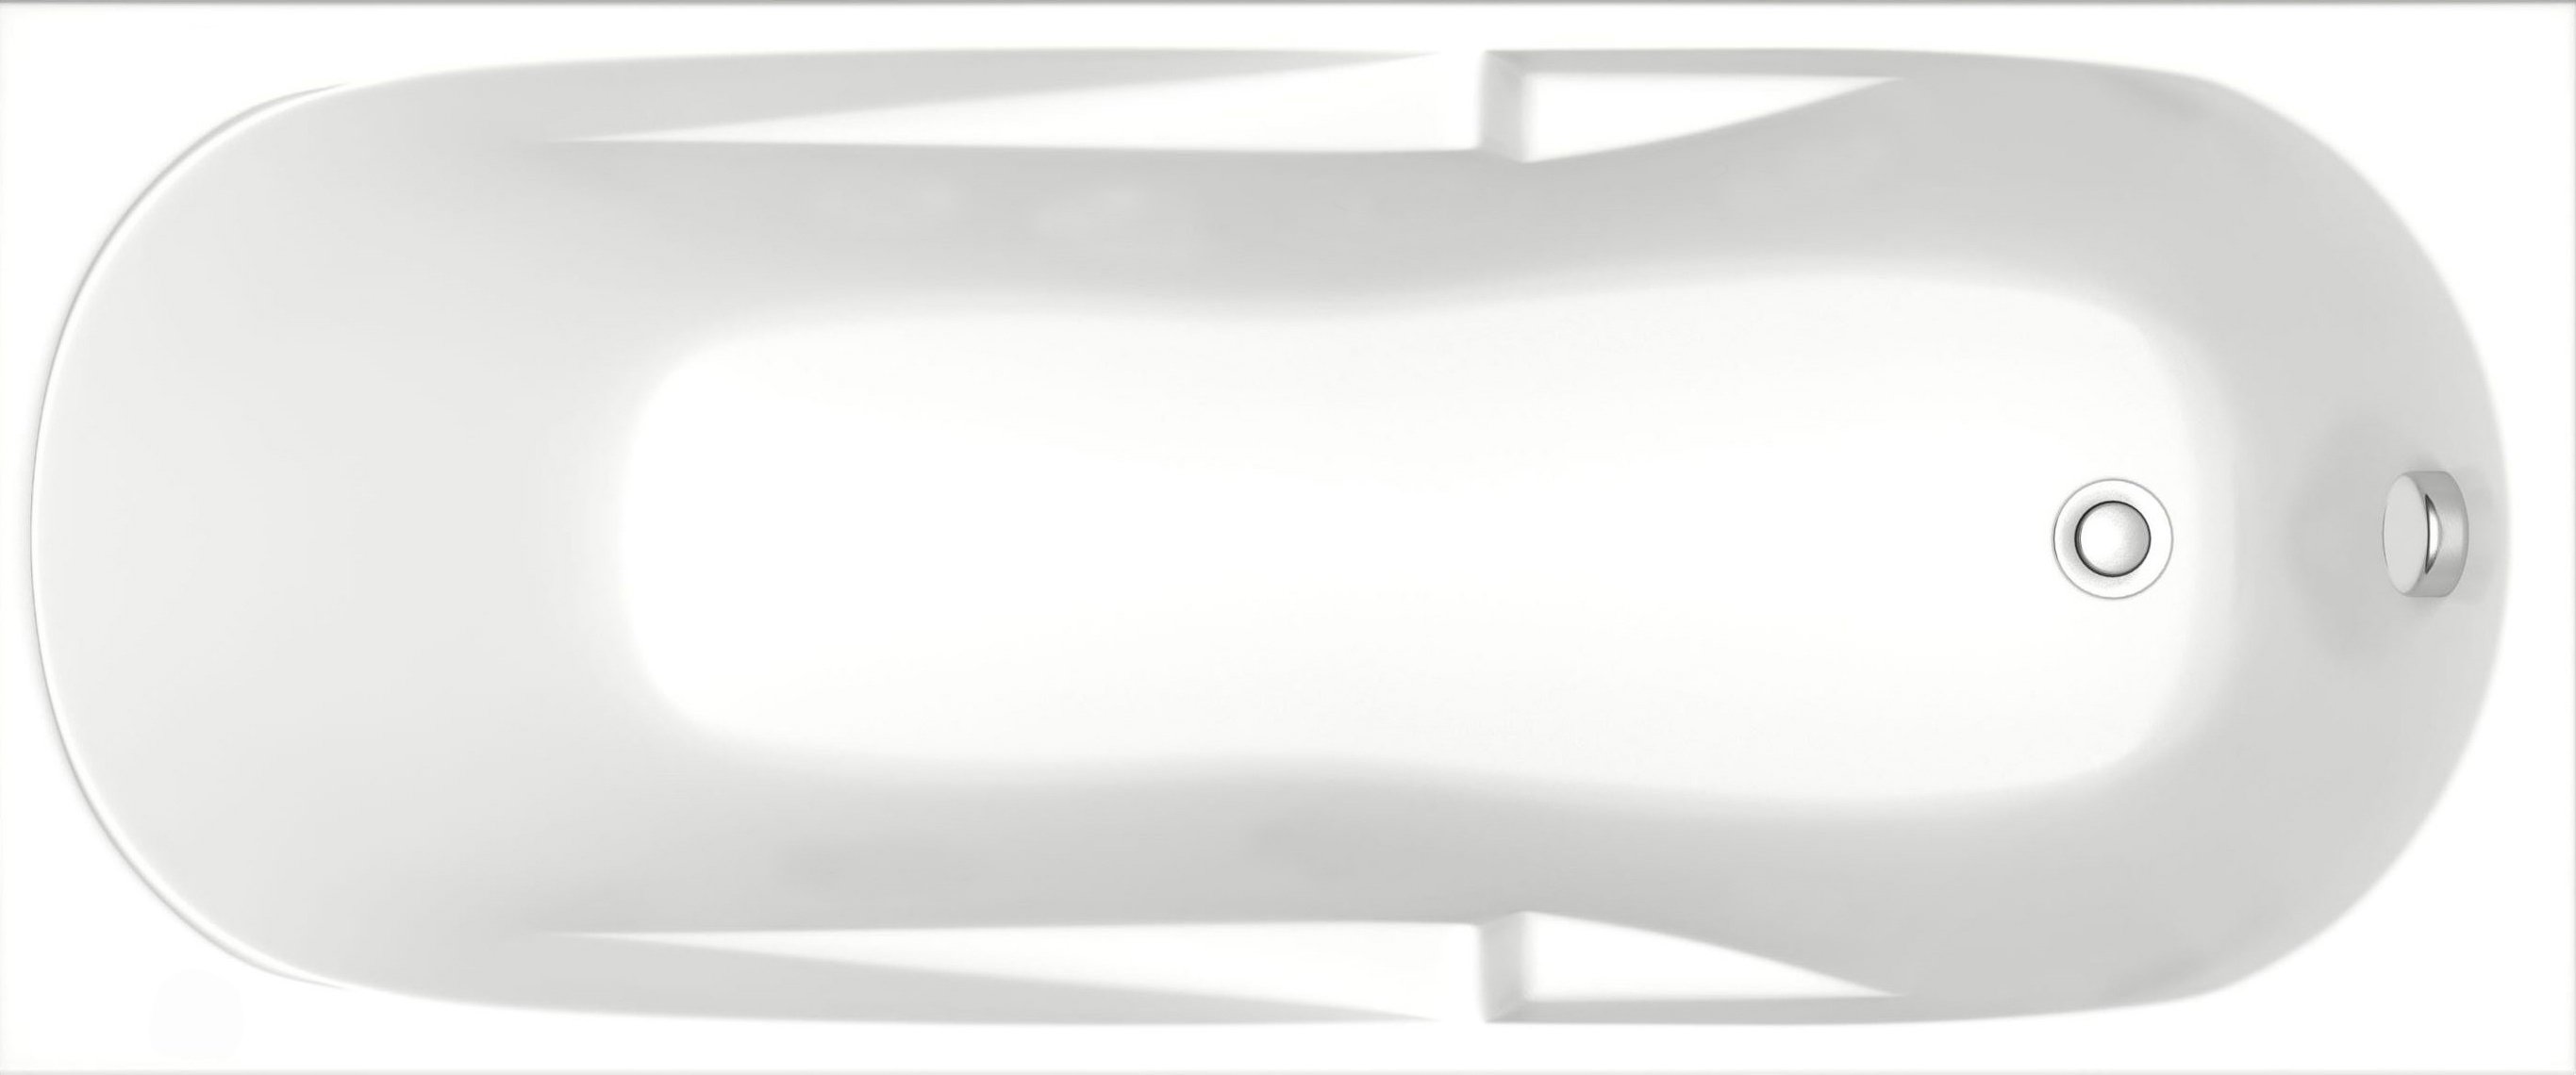 Акриловая ванна Bas Нептун стандарт 170 см на ножках В 00026 - 0